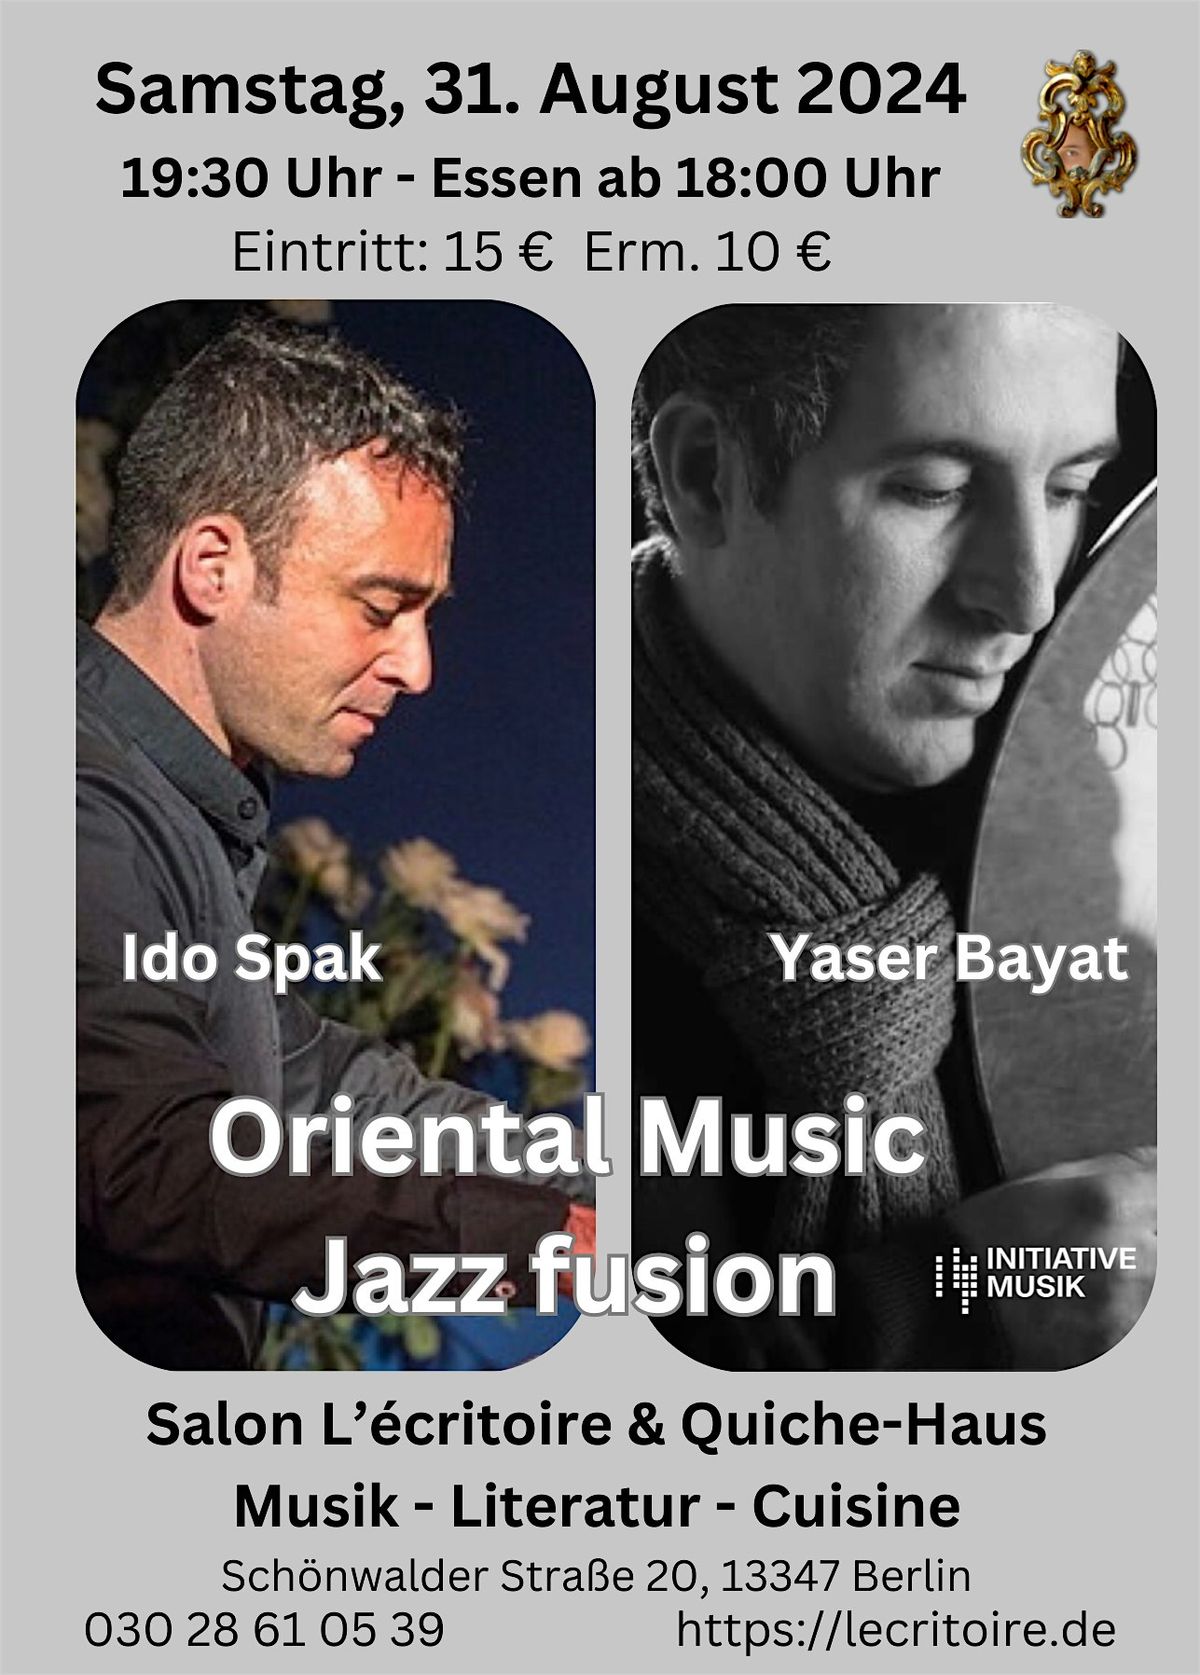 Oriental Music Jazz fusion mit Ido Spak und Yaser Bayat